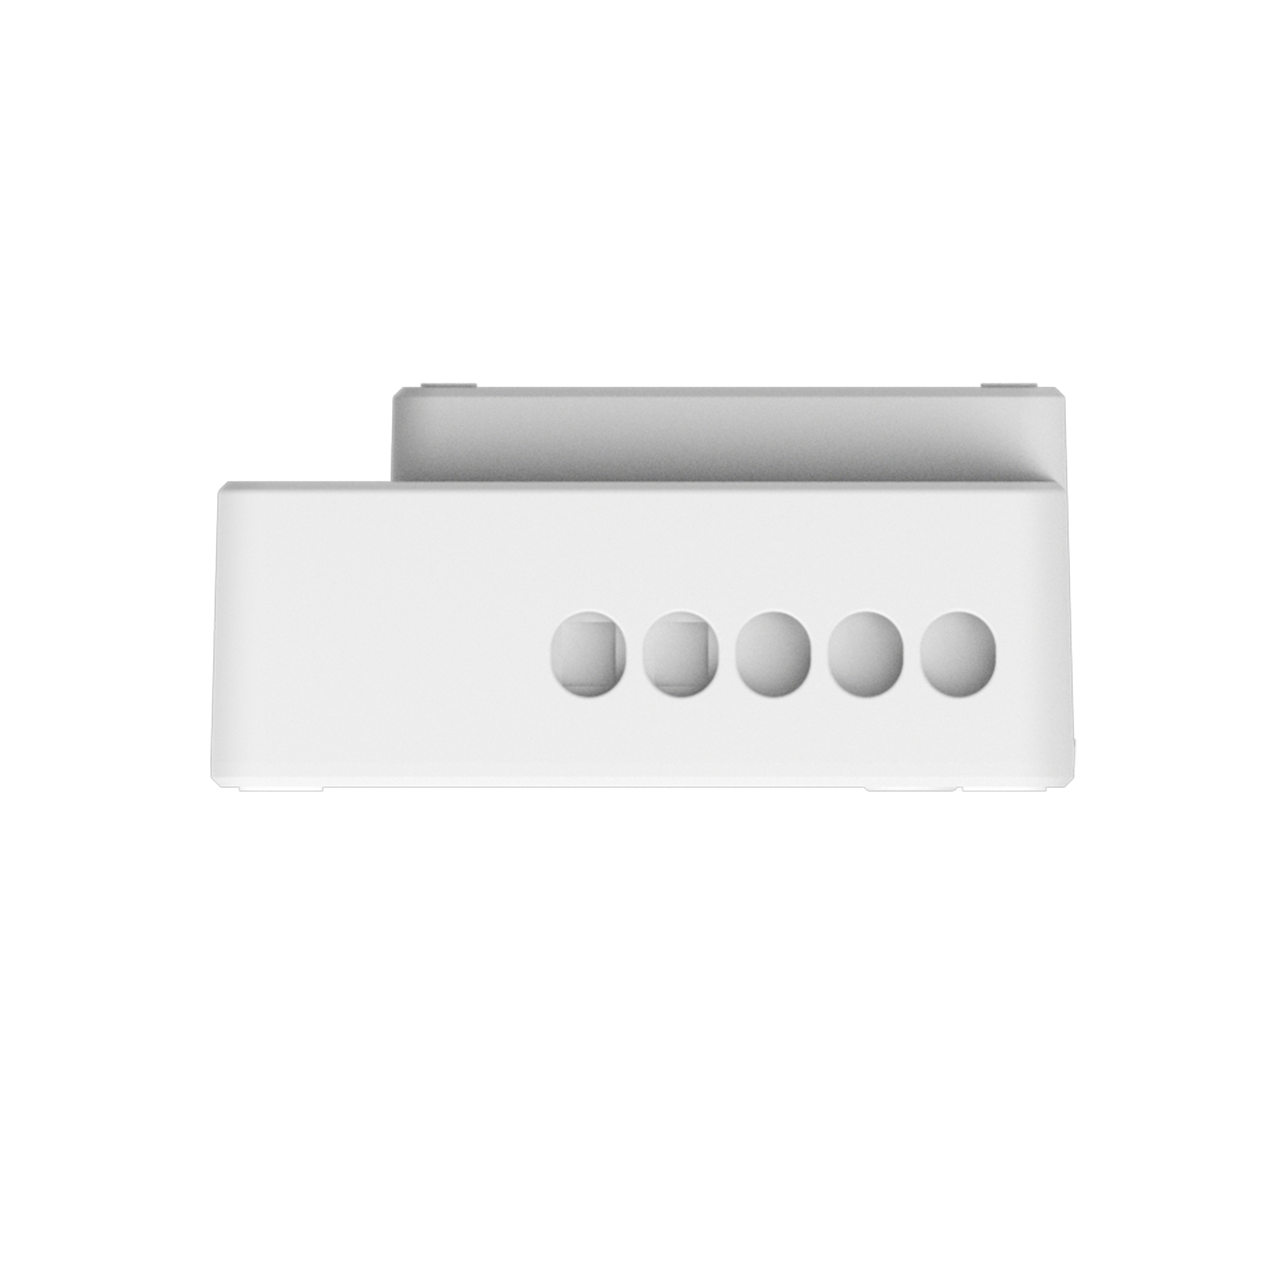 LifeSmart 3-Way Cube Switch Module Pro